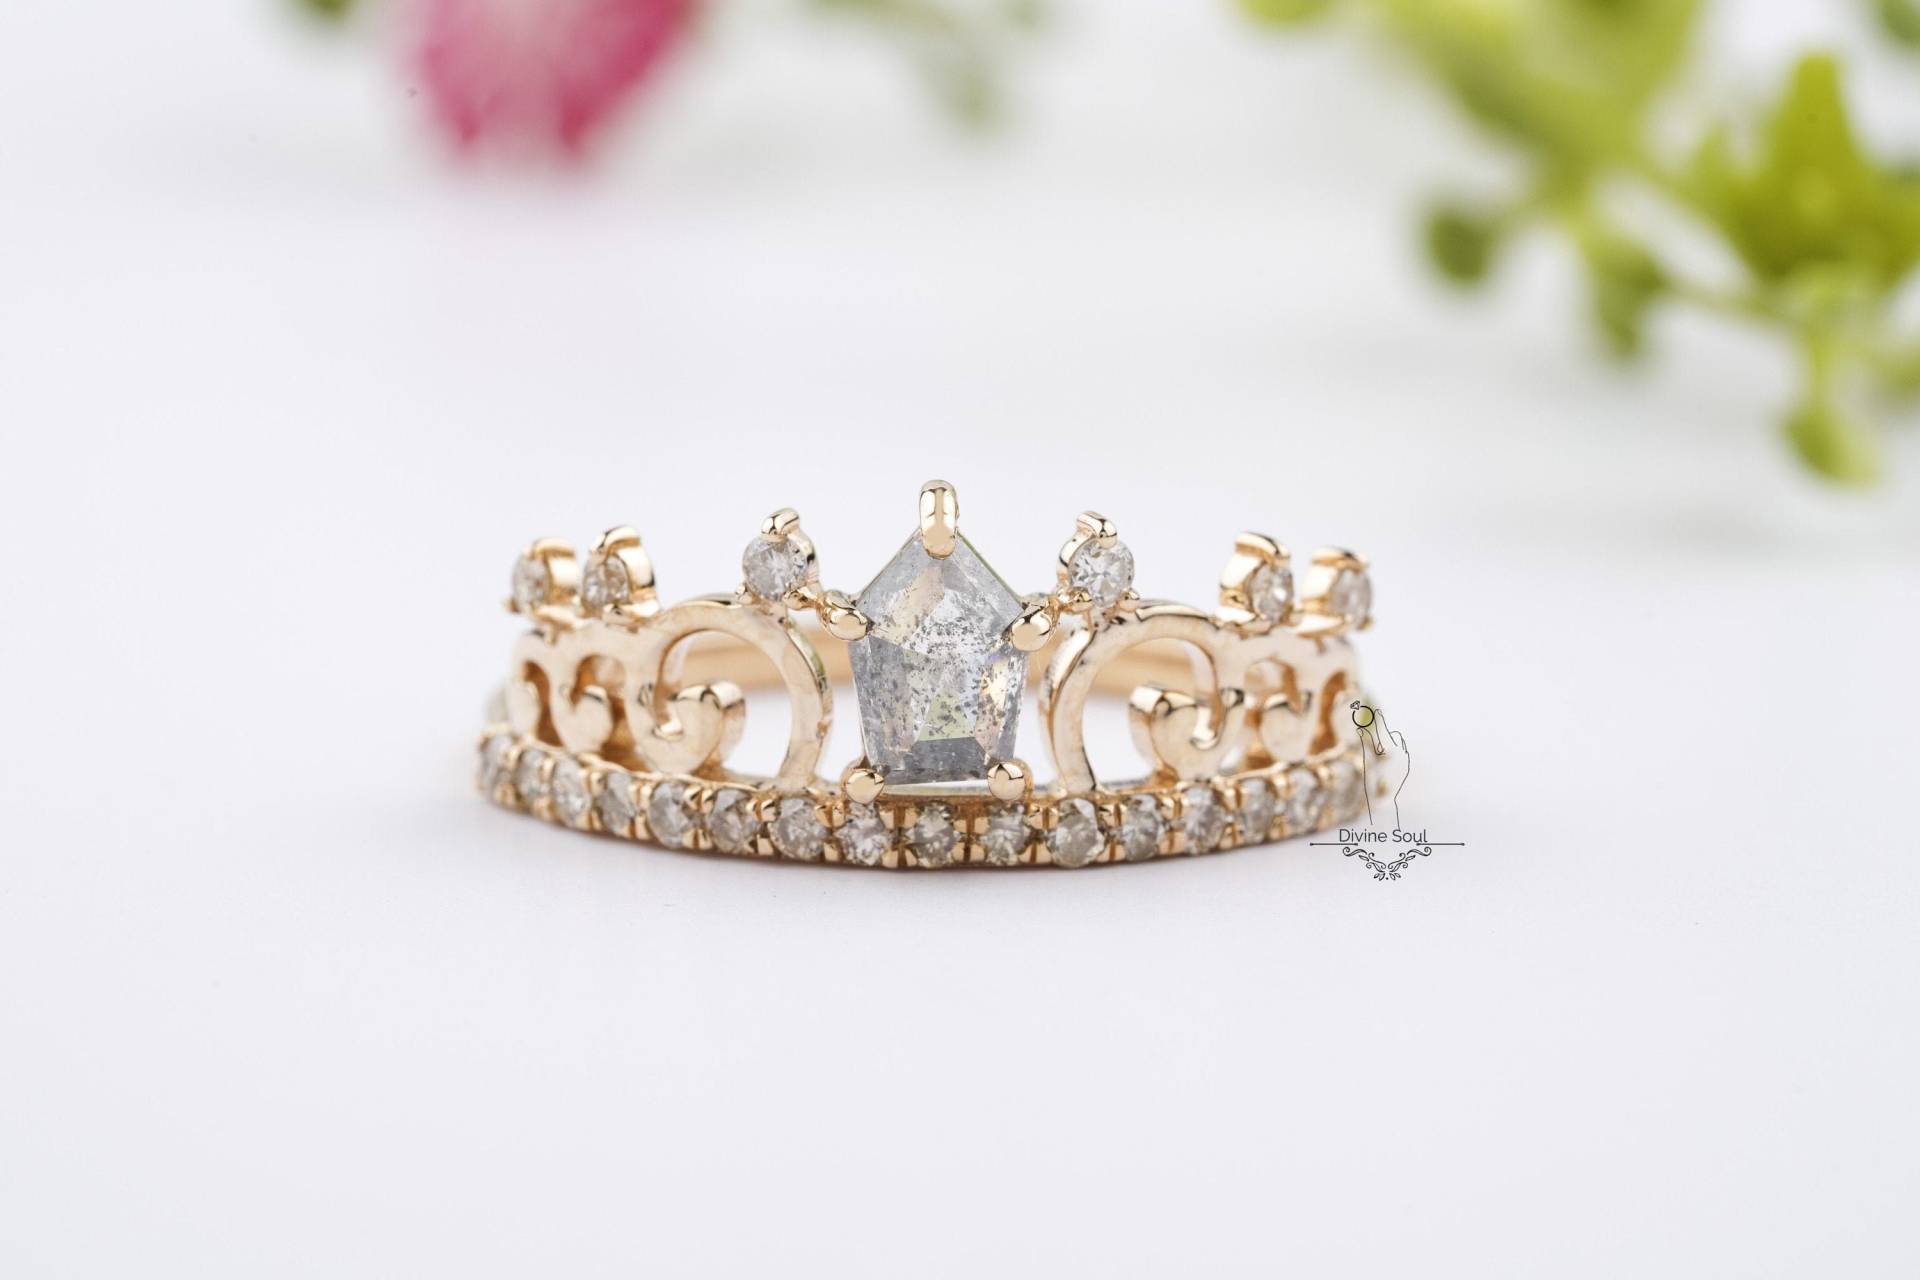 Rose Gold Krone Diamant Ring | Vintage Inspirierter Verlobungsring Prinzessin Ehering Pentagon Salz Und Pfeffer von TheDivineSoulCo